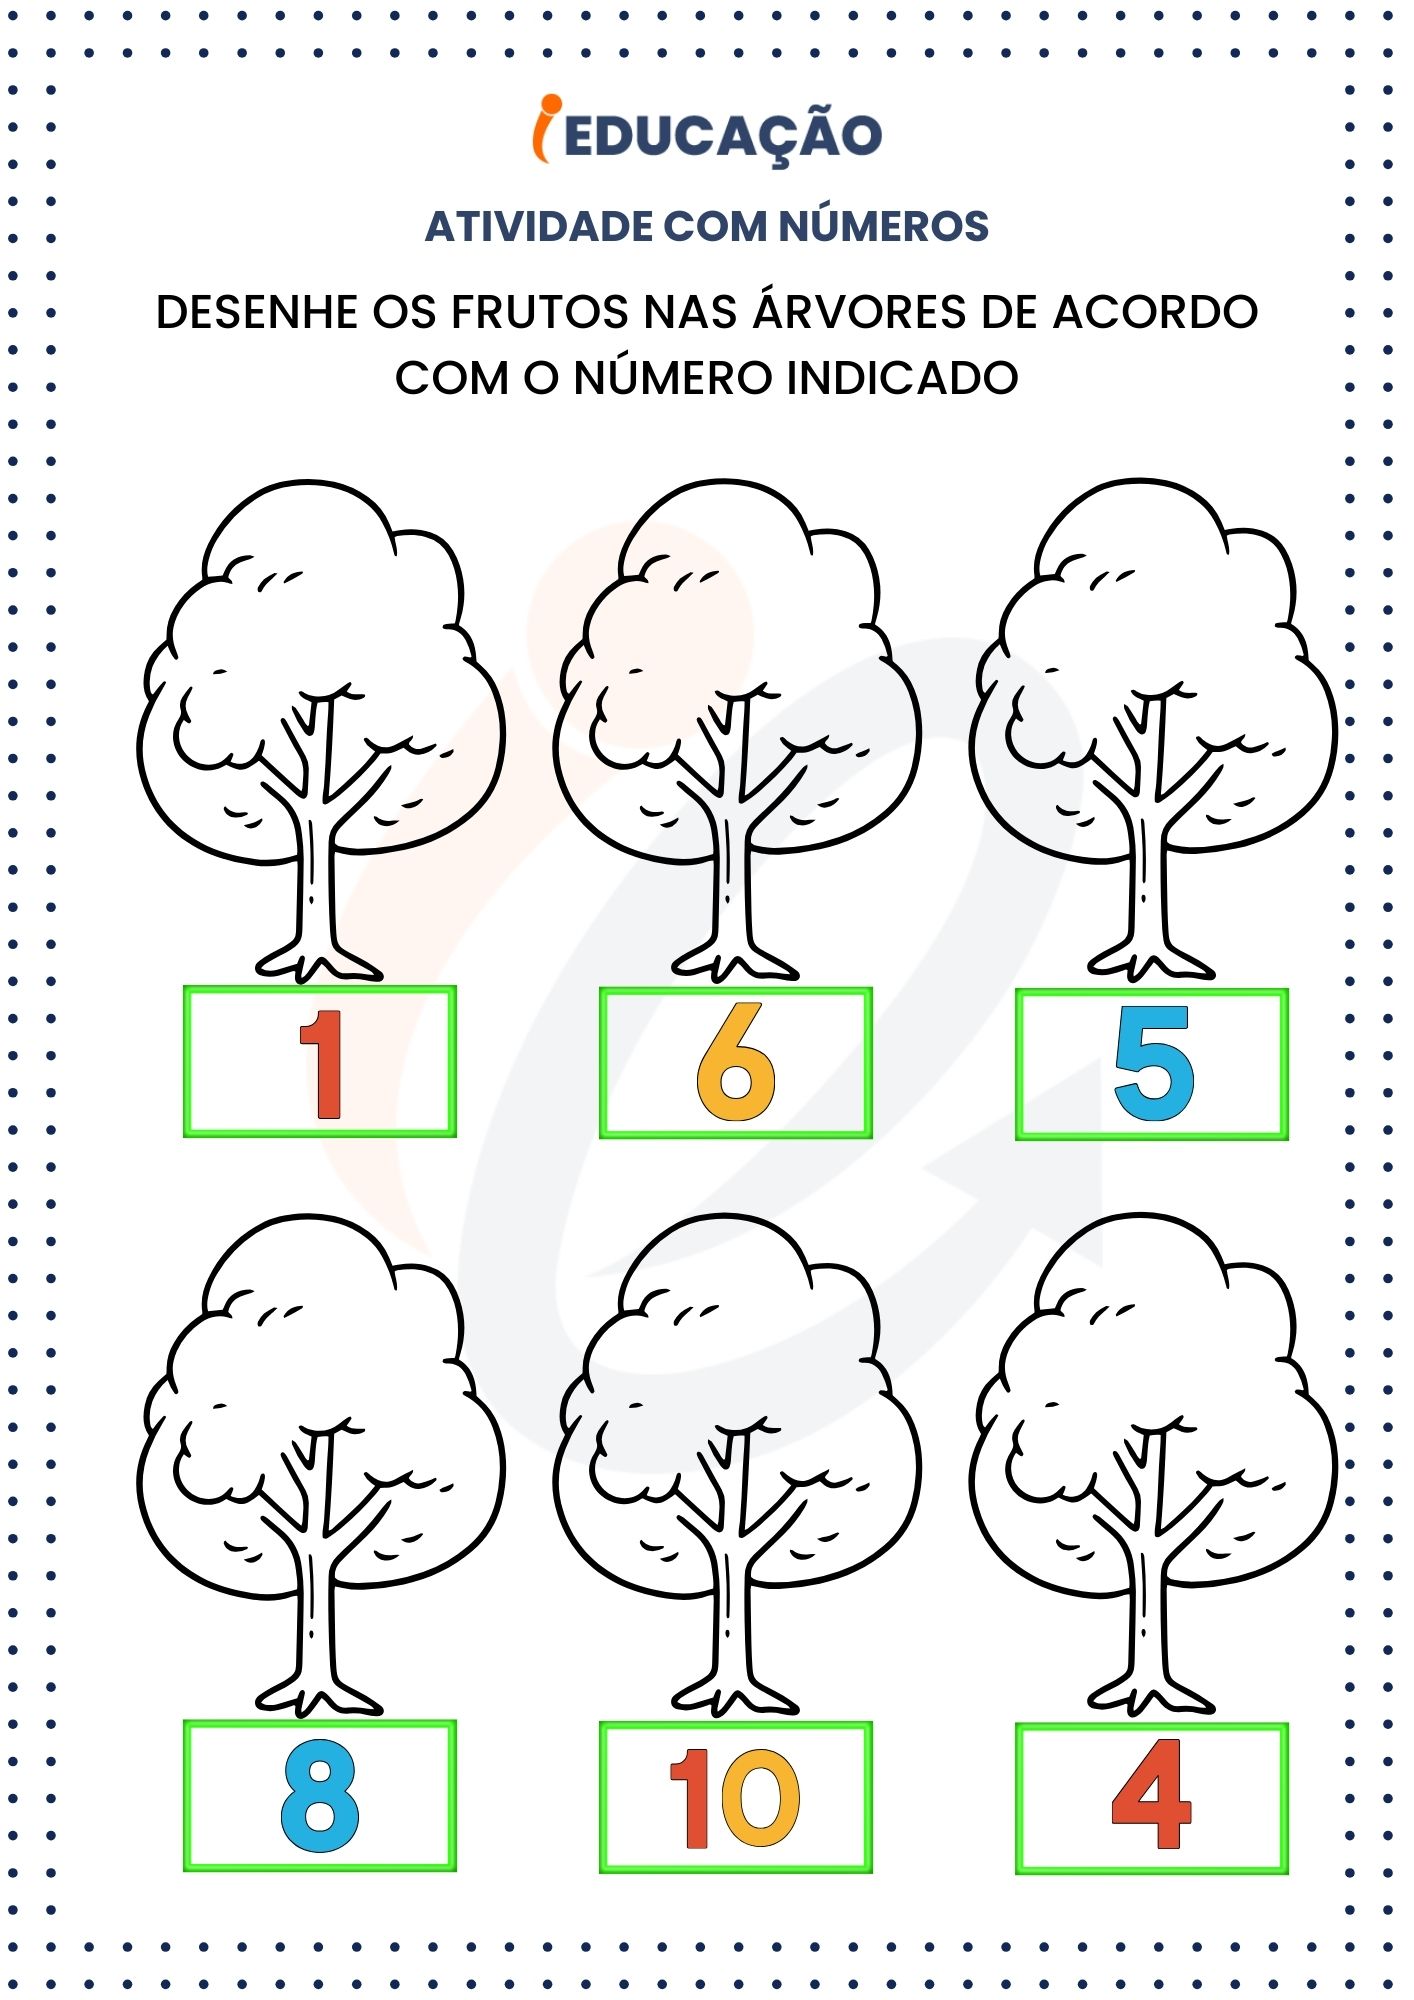 Atividades com números_ Desenhe os frutos nas árvores de acordo com o número indicado